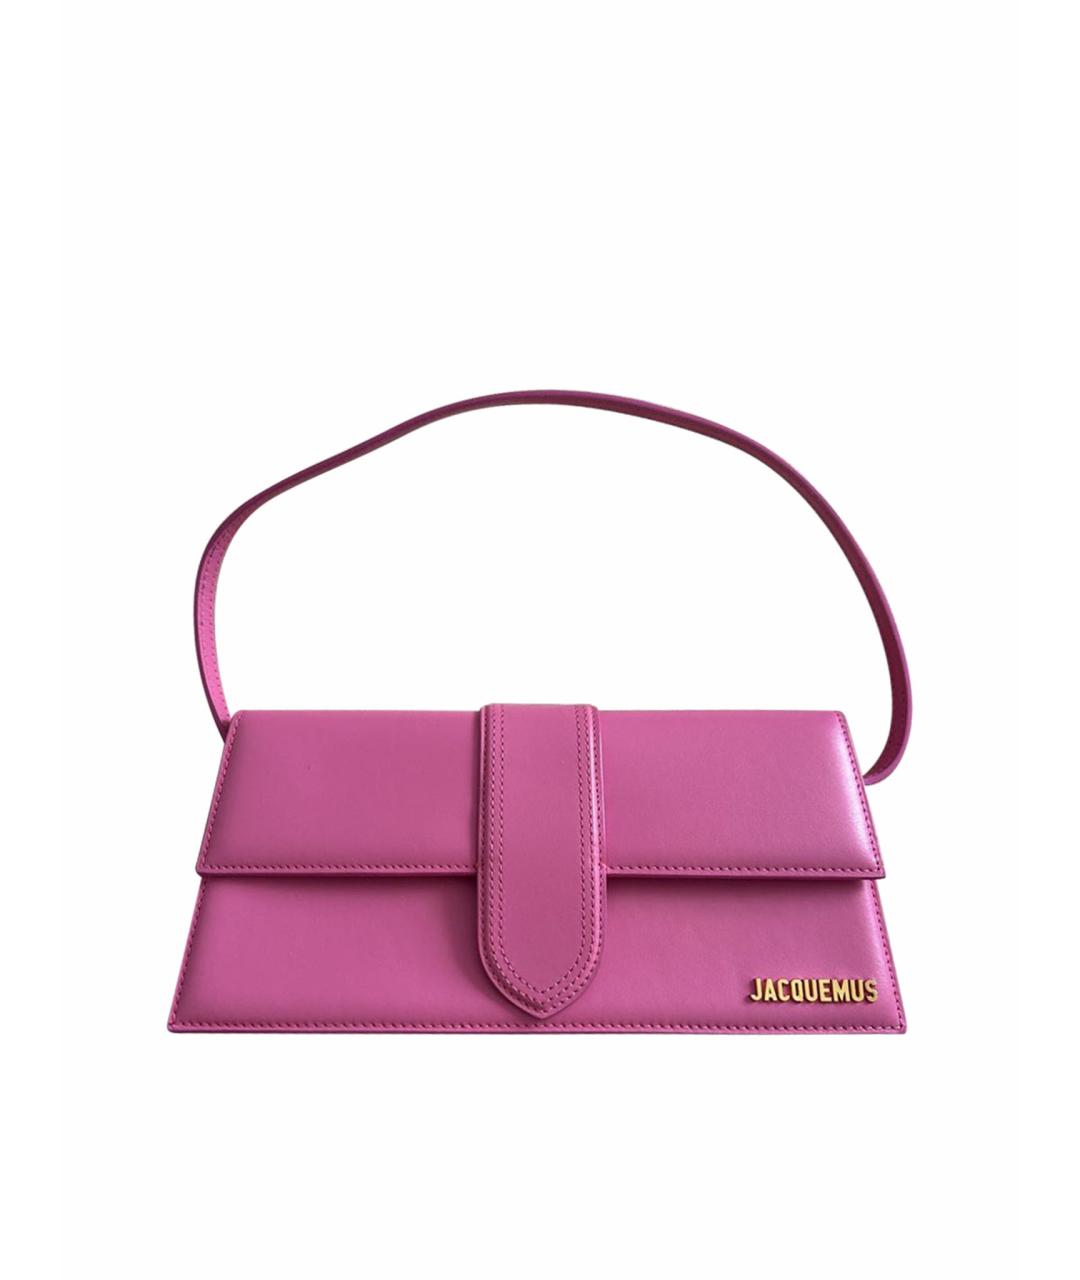 JACQUEMUS Розовая кожаная сумка с короткими ручками, фото 1